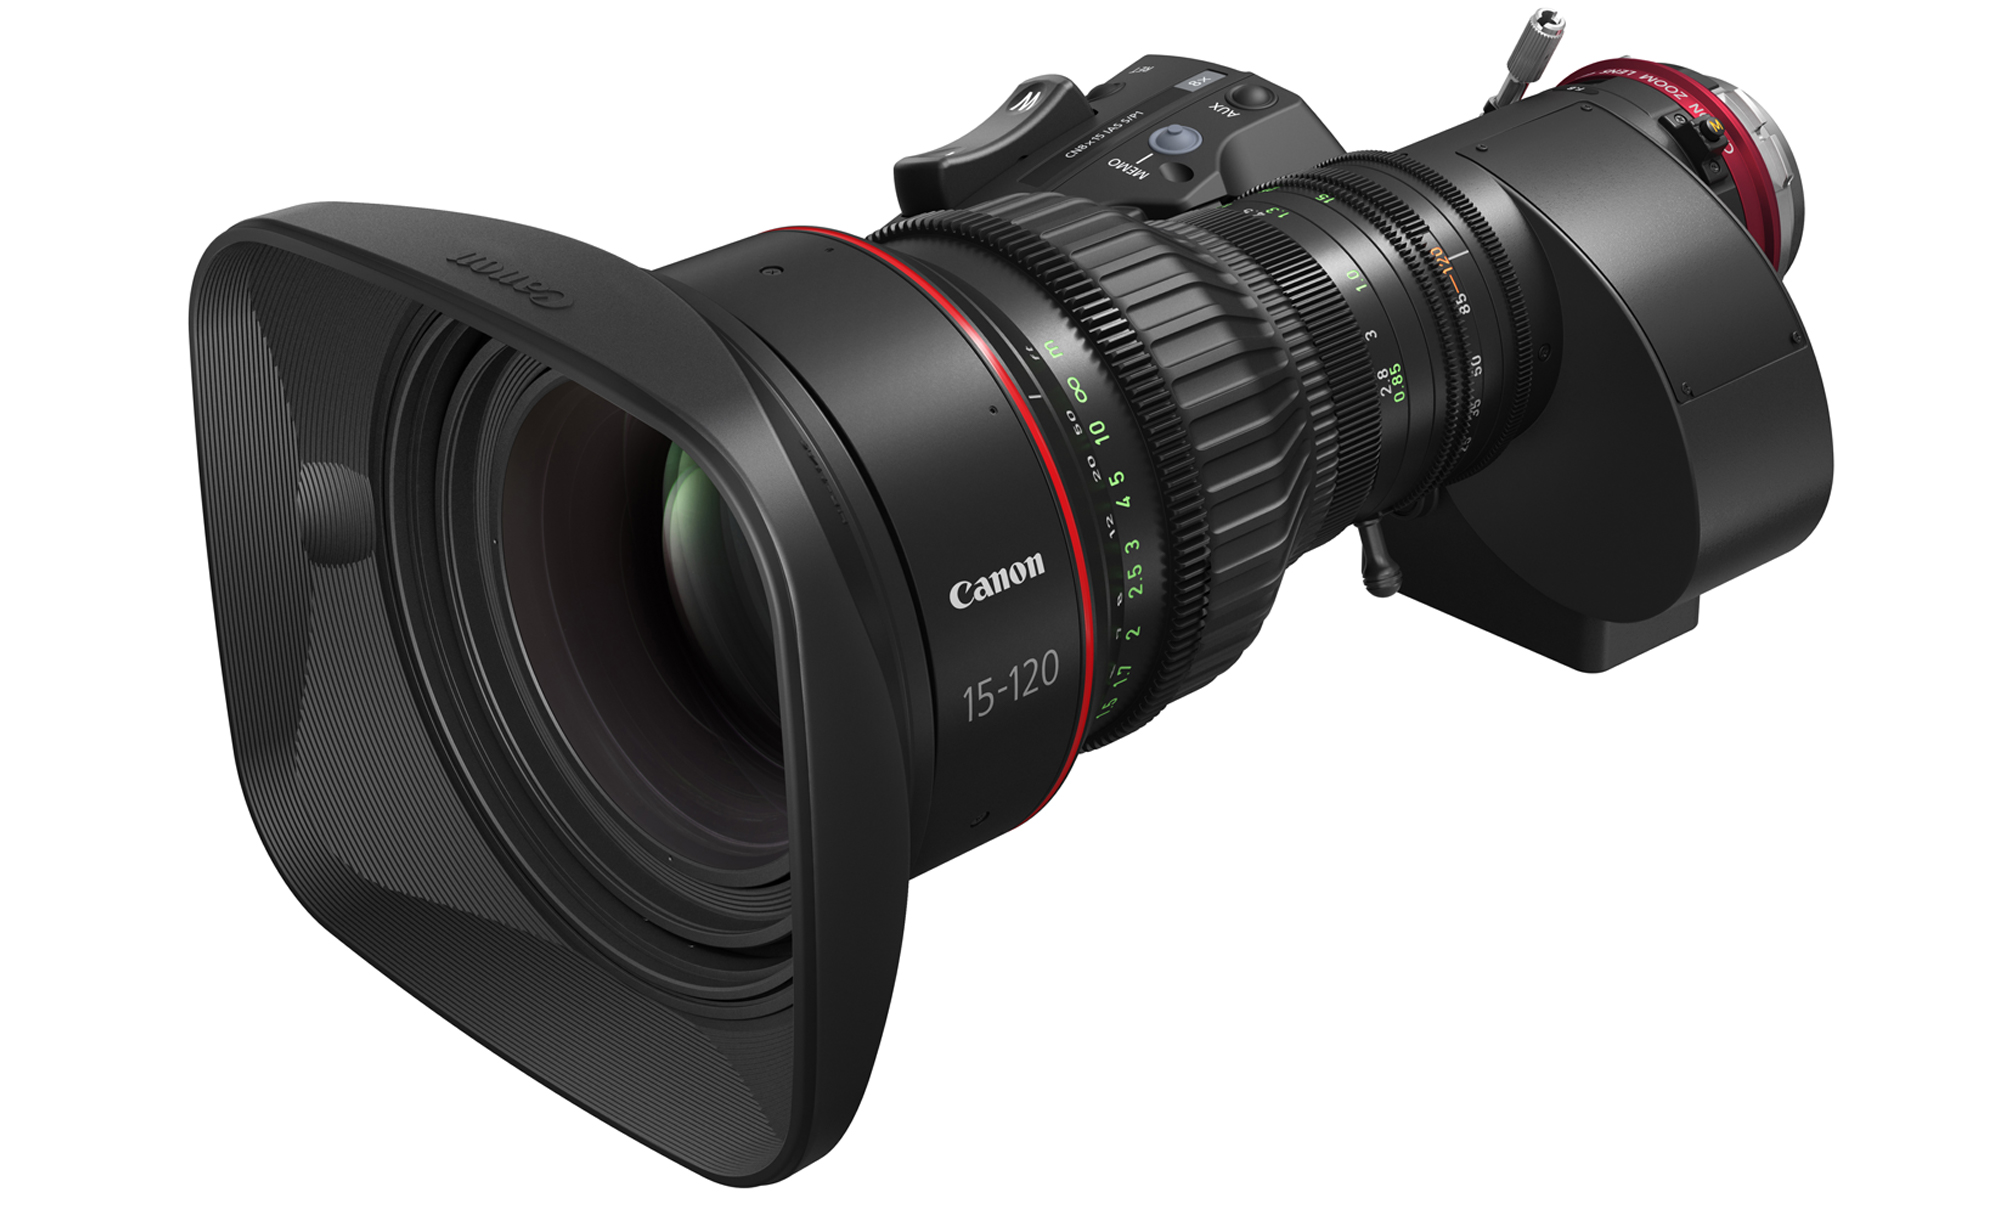 キヤノン、EFシネマレンズ「CINE-SERVO レンズ」シリーズ2製品を発表